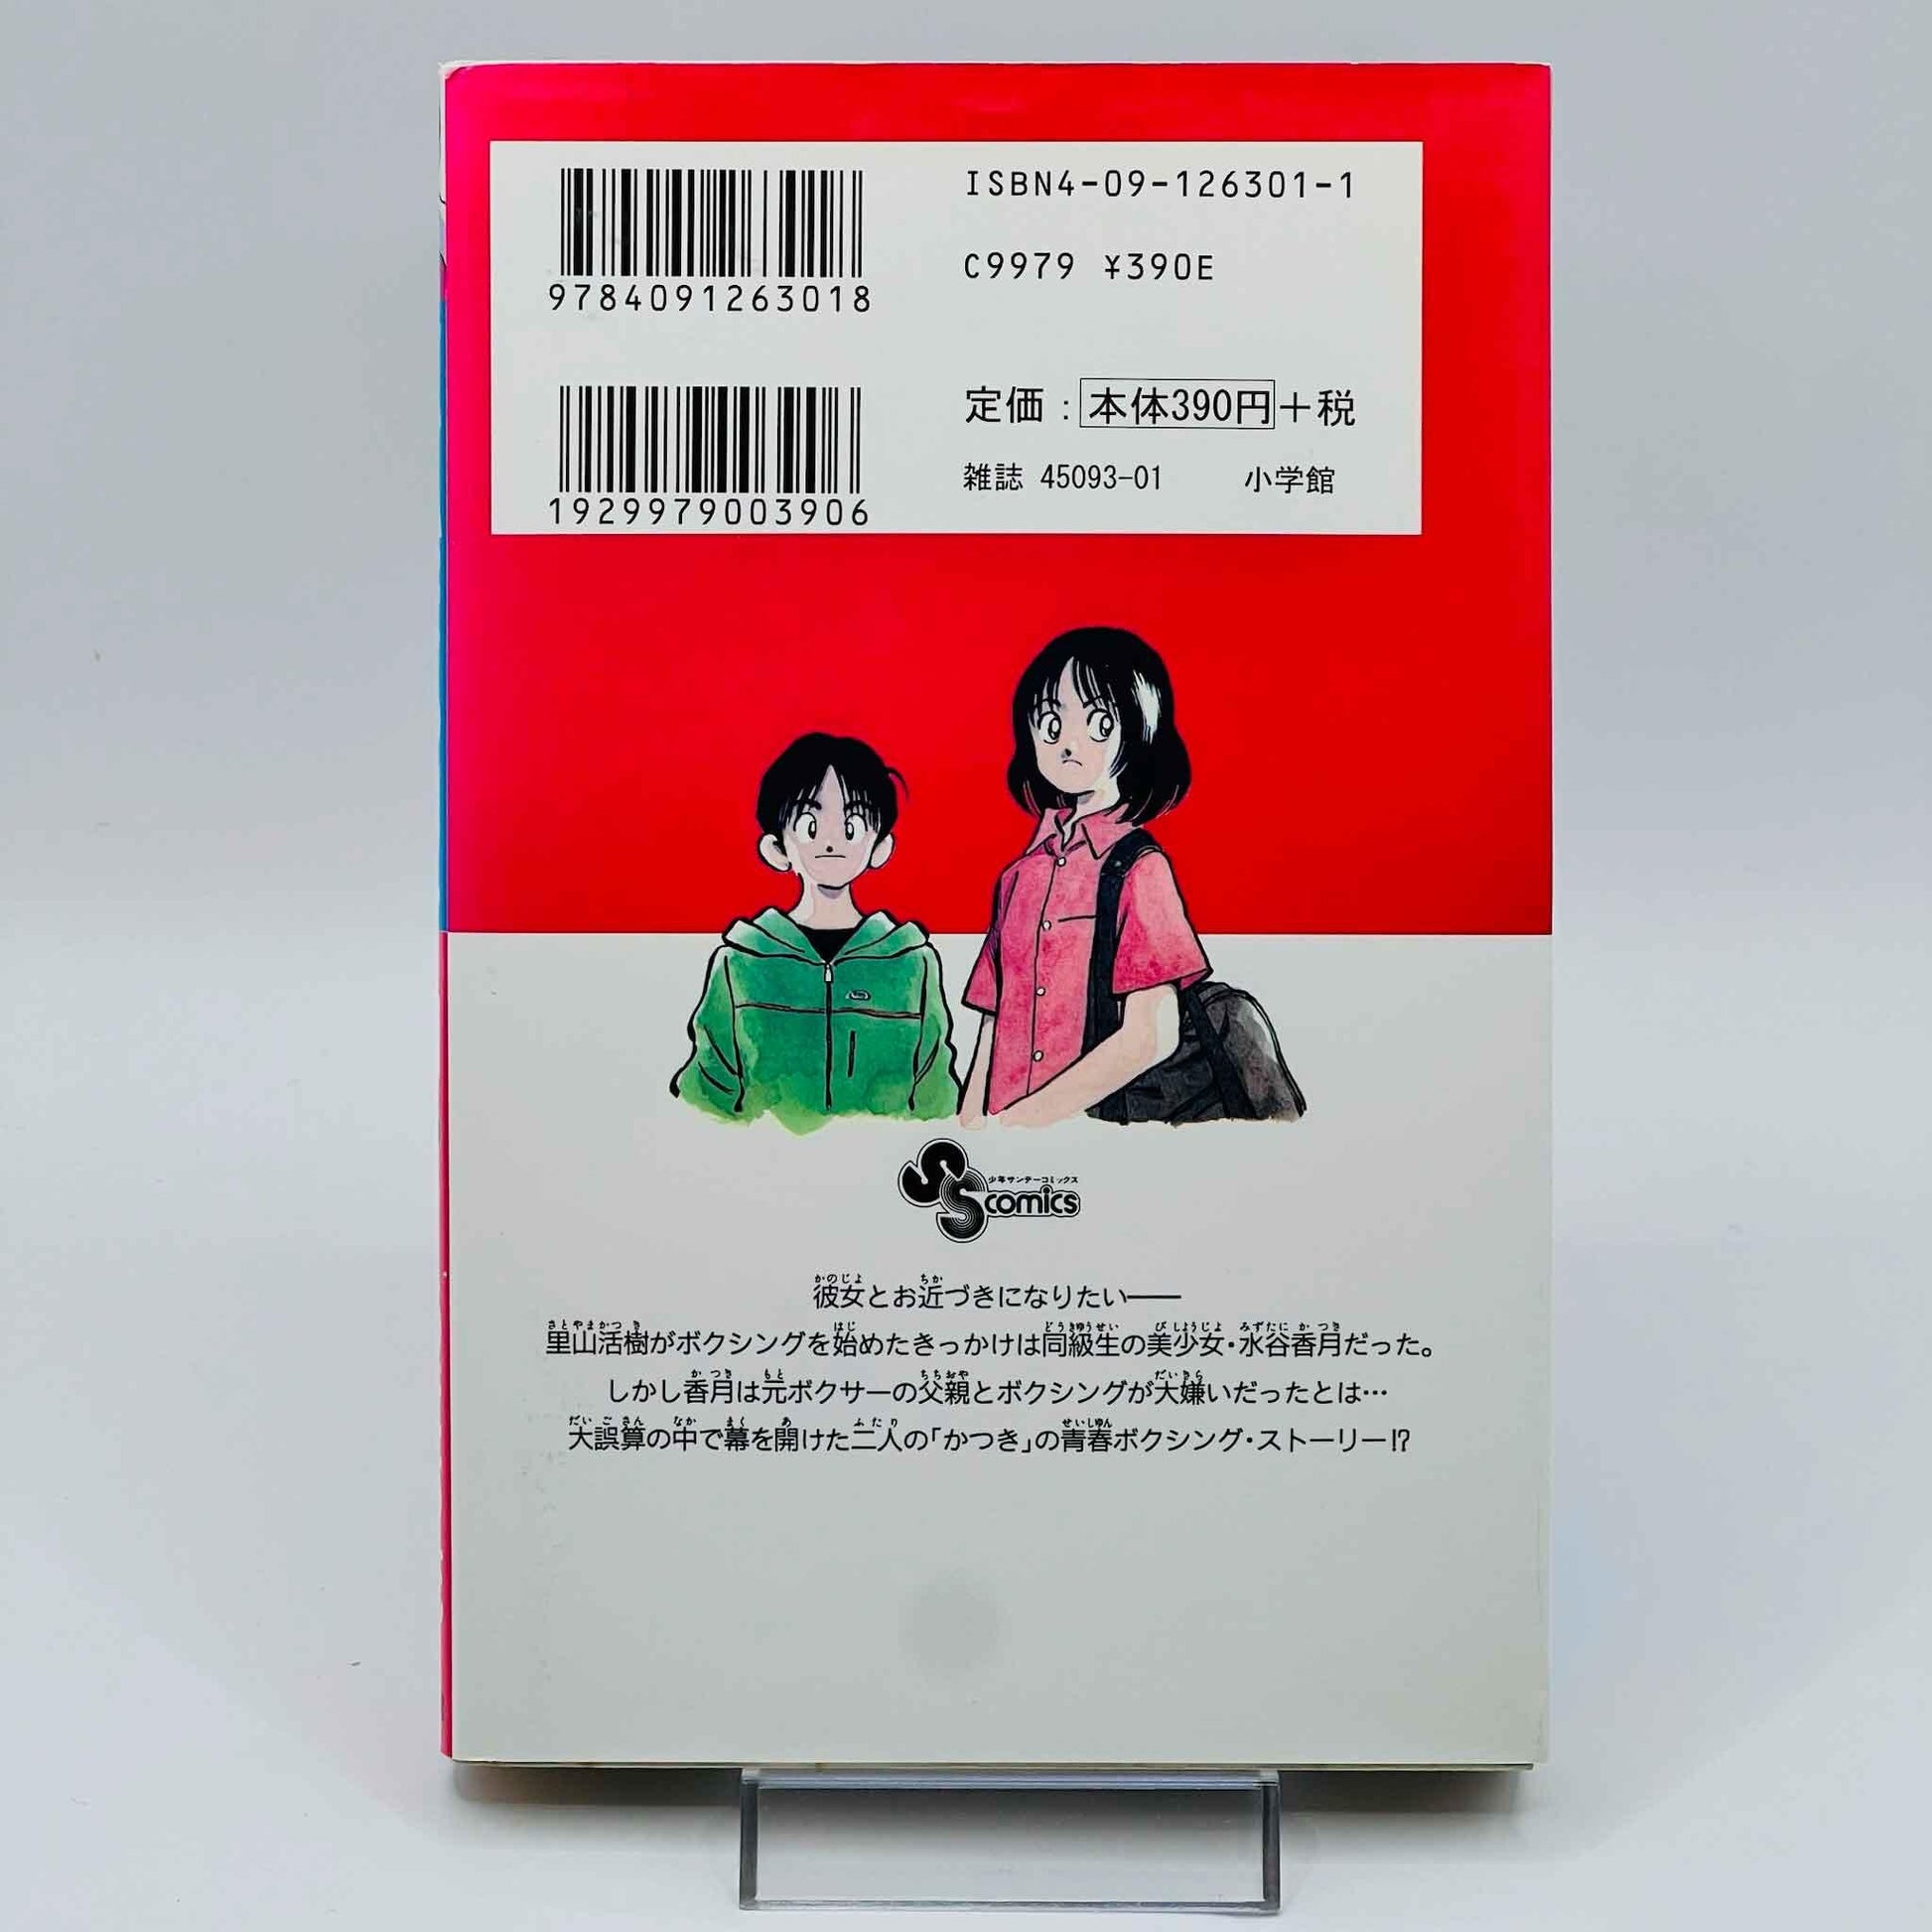 Katsu - Volume 01 - 1stPrint.net - 1st First Print Edition Manga Store - M-KATSU-01-002